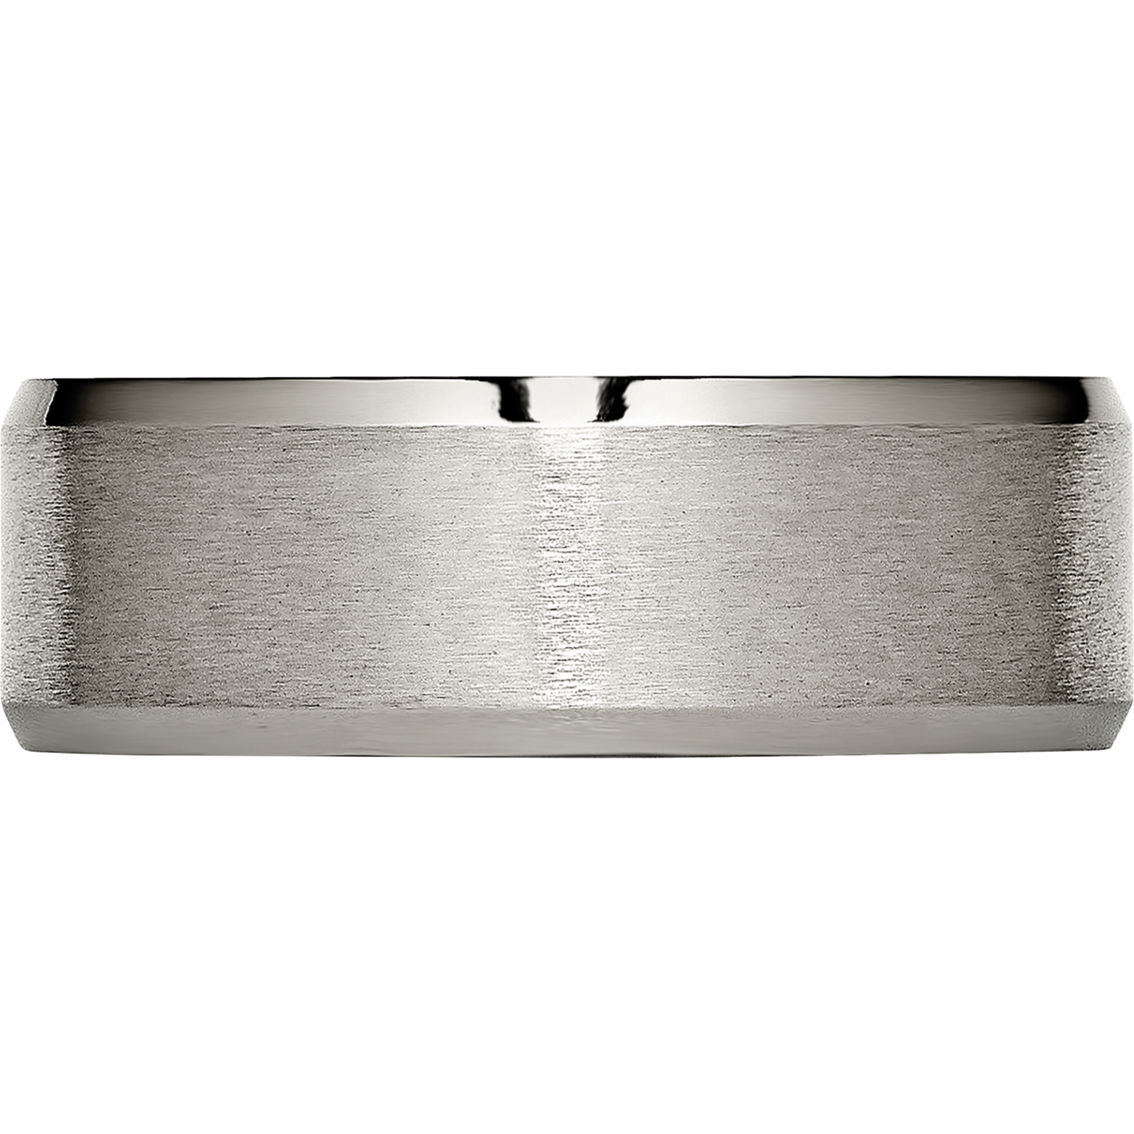 Chisel Titanium Brushed and Polished 8mm Beveled Edge Band - Image 2 of 4